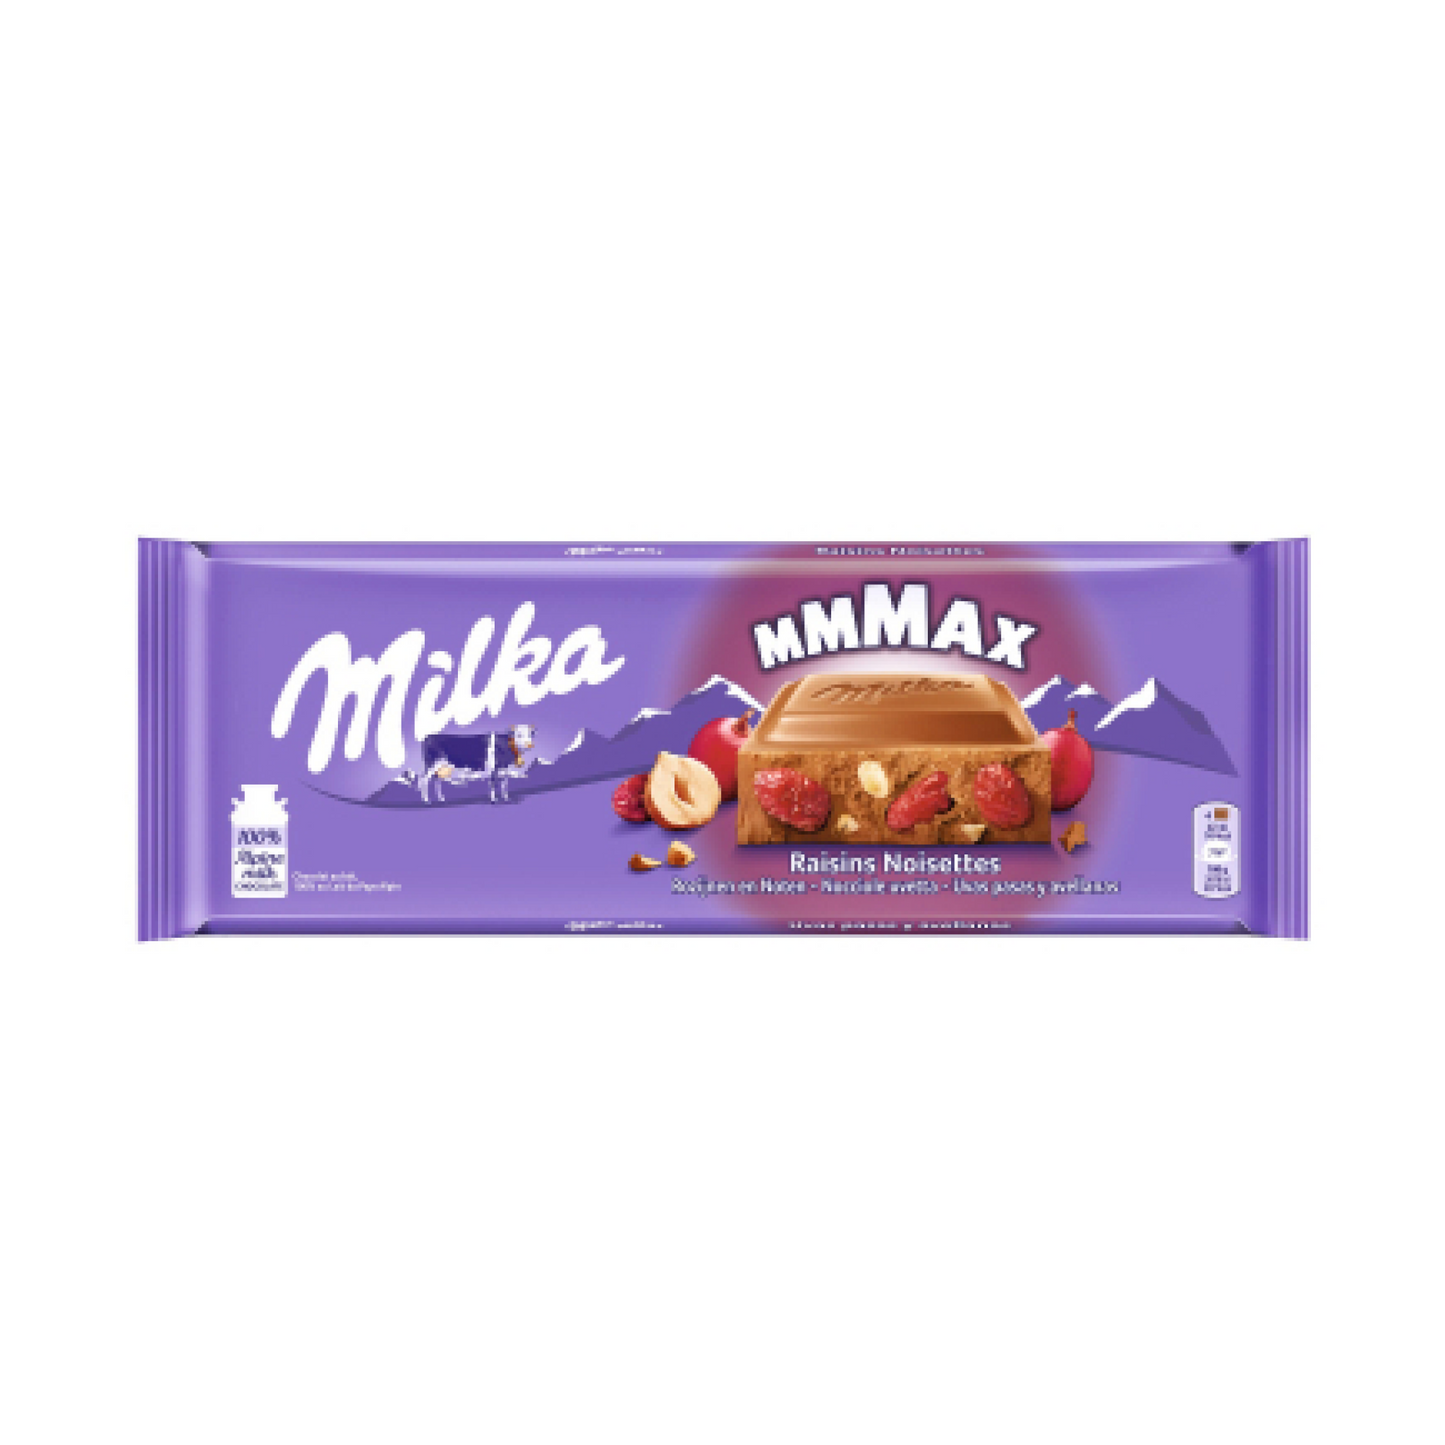 Milka Mmmax Raisins and Nuts 270g